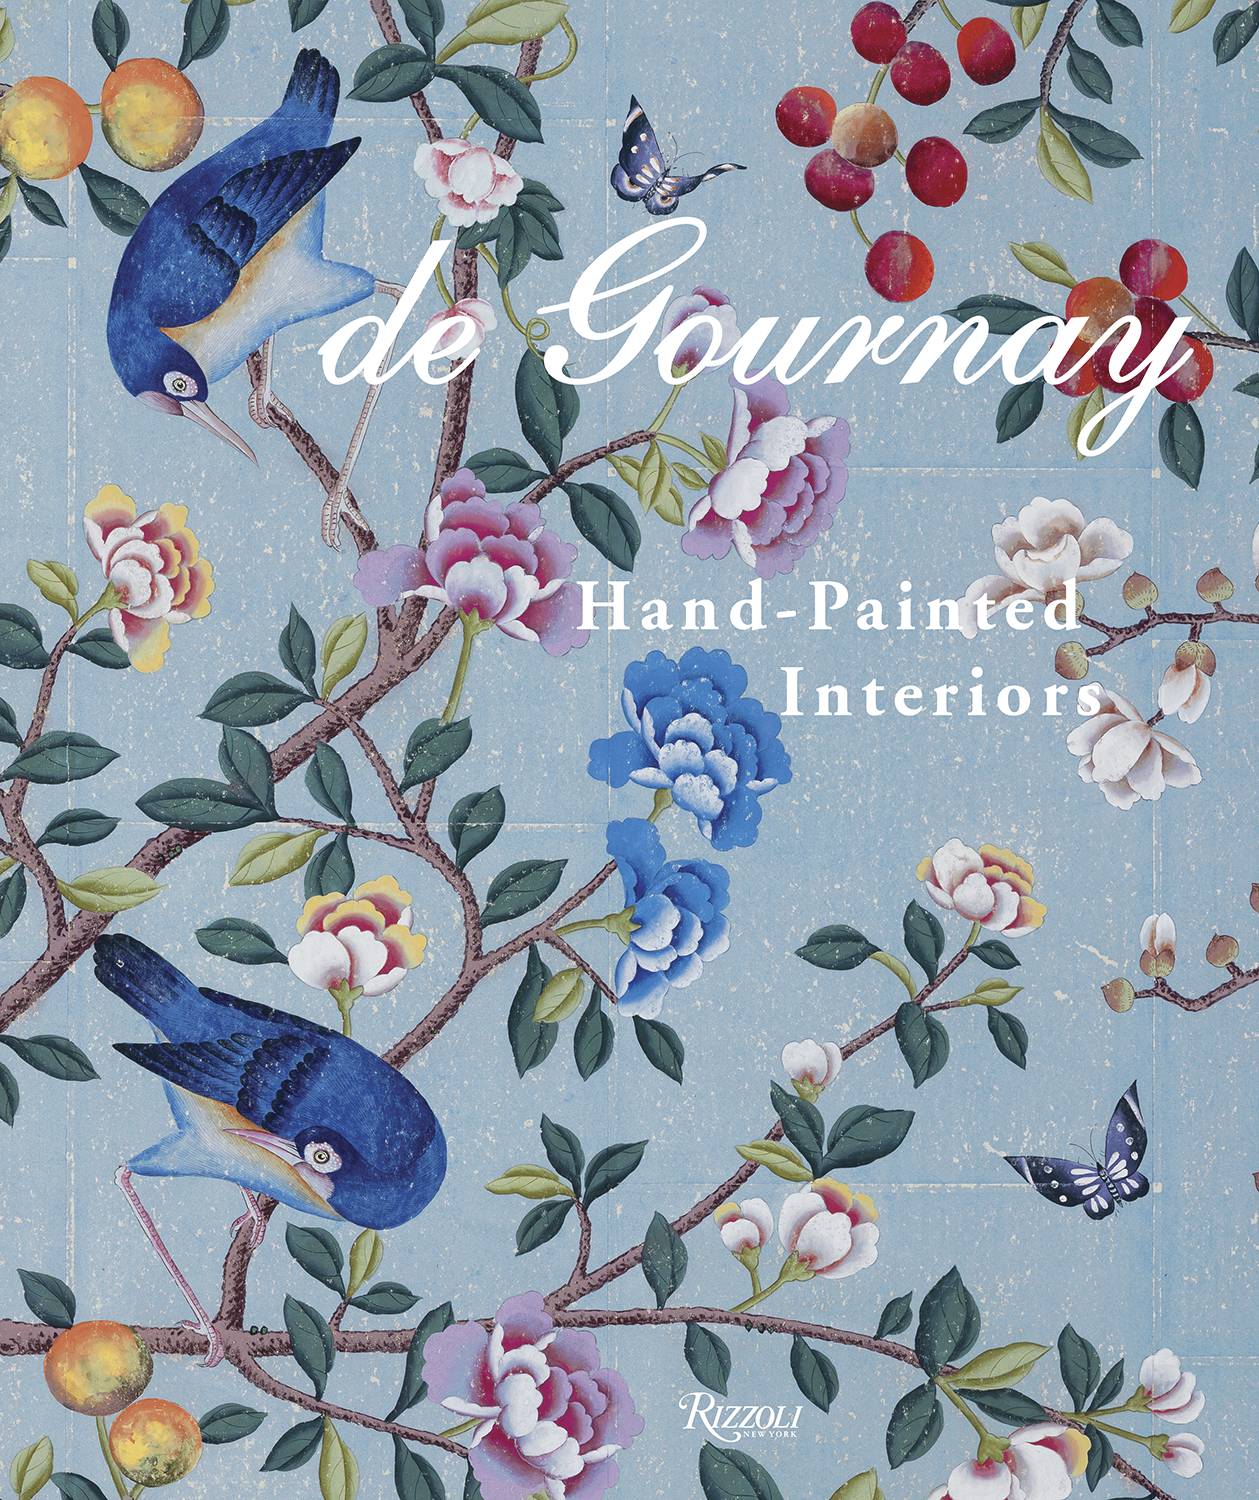 de Gournay cover book